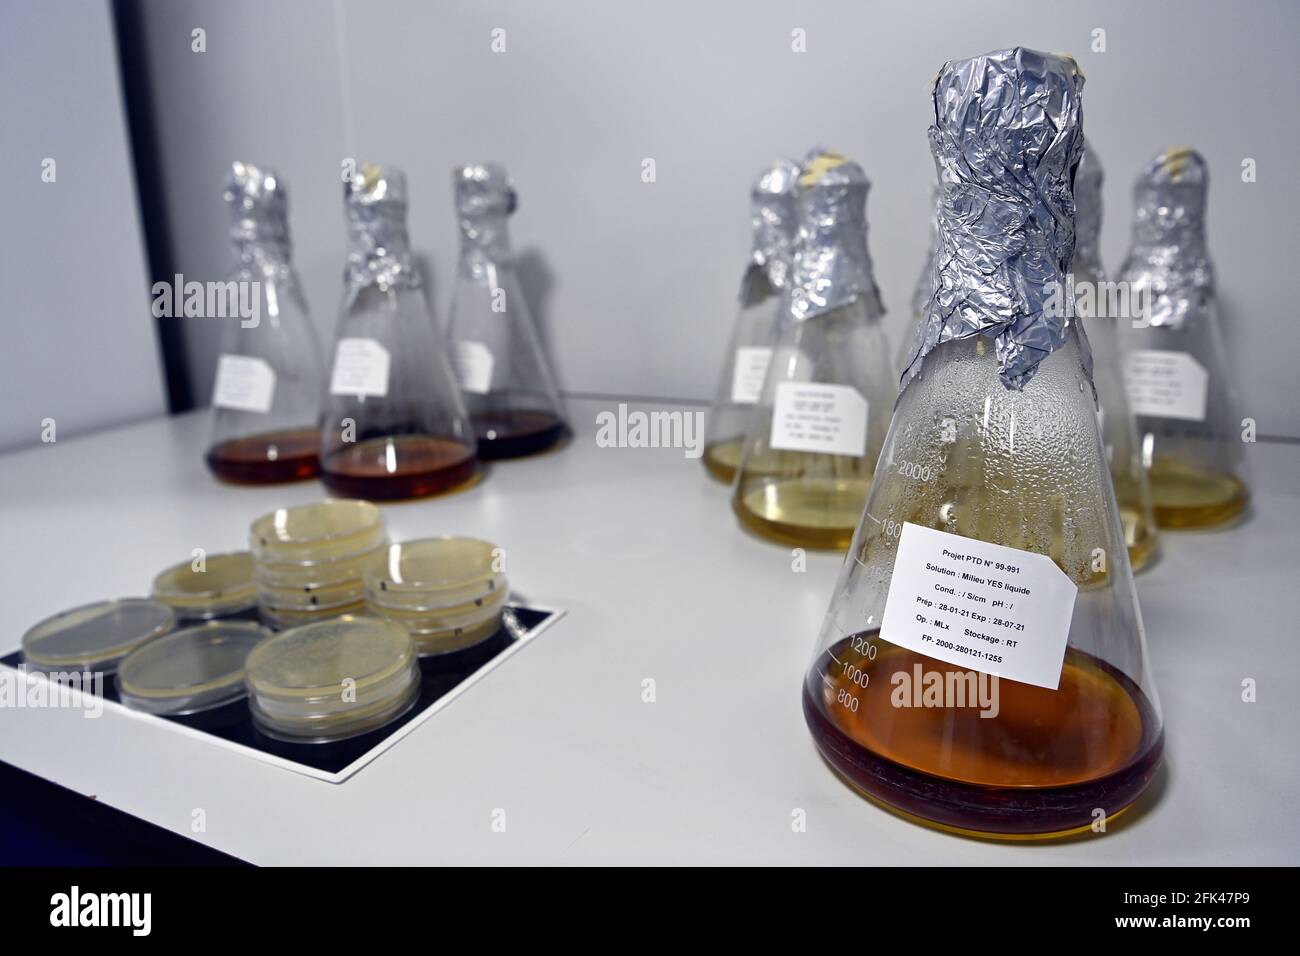 Die Abbildung zeigt die Produkte in marge eines königlichen Besuches in Eurogentec, einem Unternehmen, das im Zentrum der Entwicklung von Therapien gegen den coron steht Stockfoto